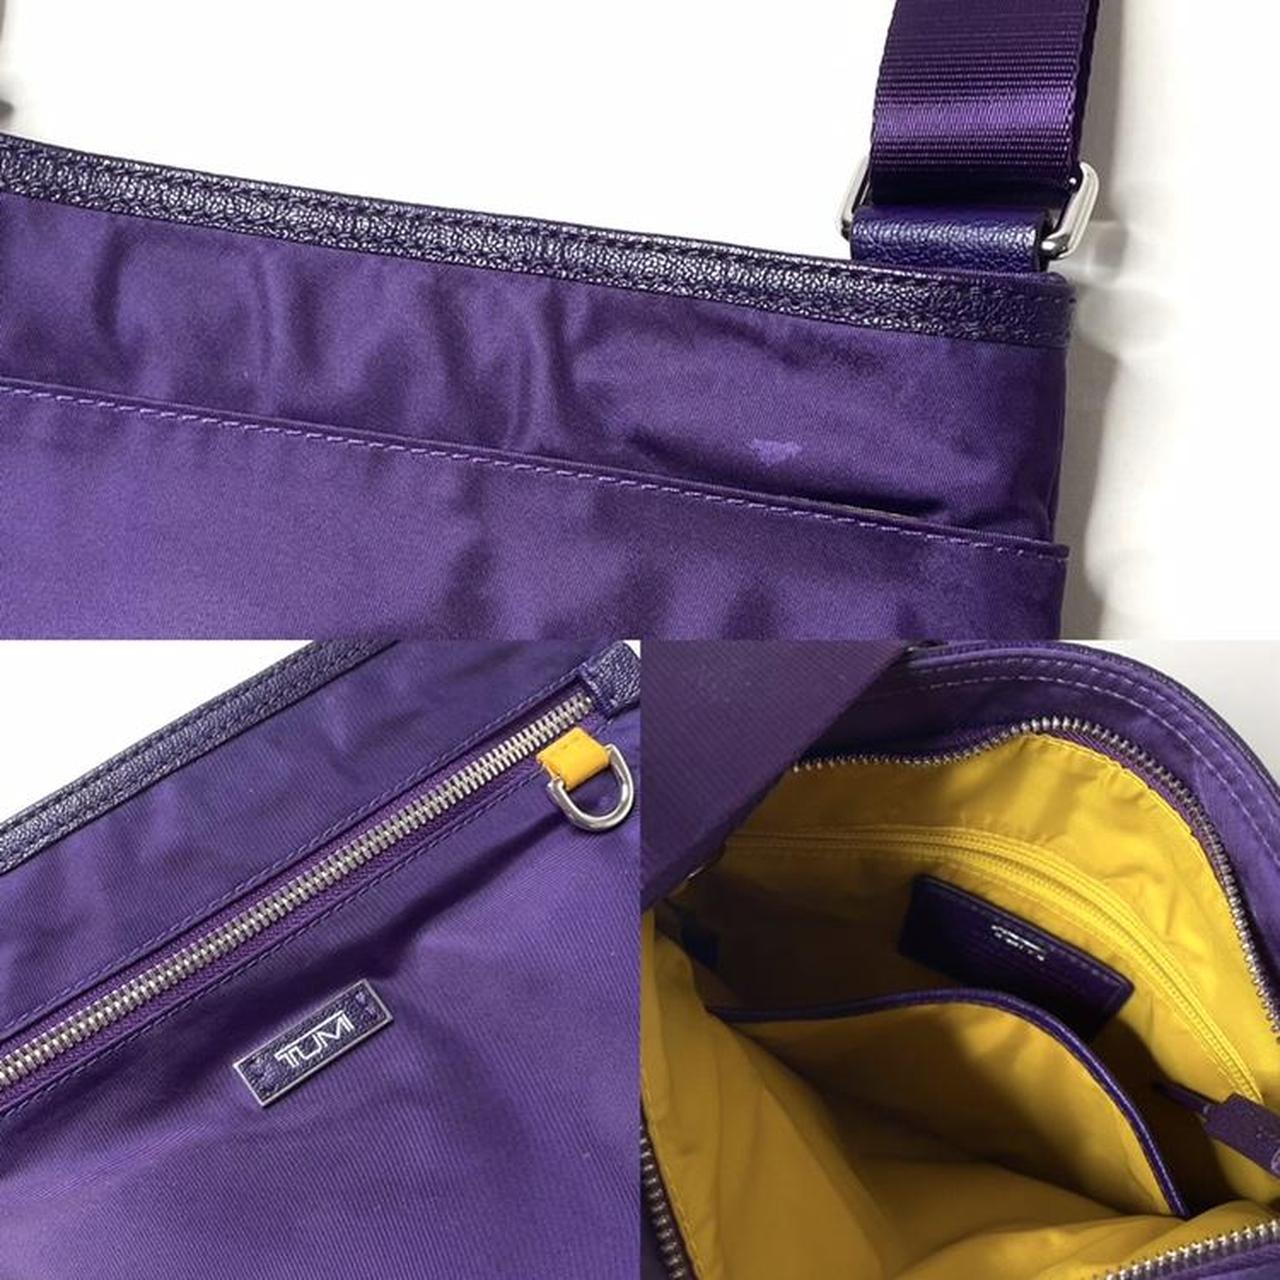 Product Image 4 - Vintage Purple Crossbody Tumi Bag

Details:
Vintage